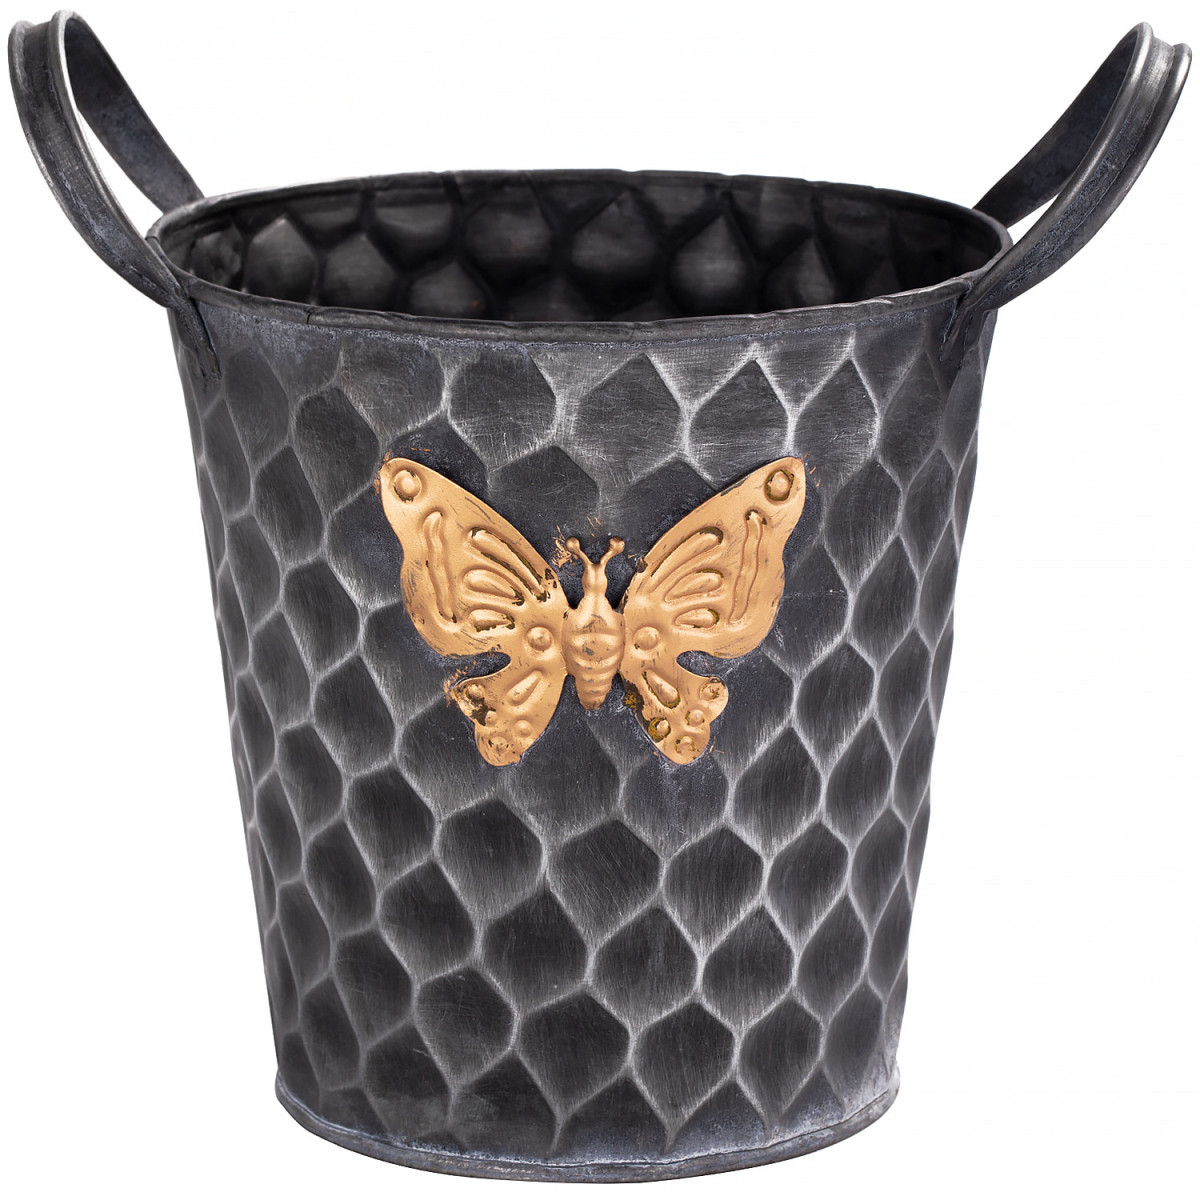 Железное кашпо Gold butterfly design